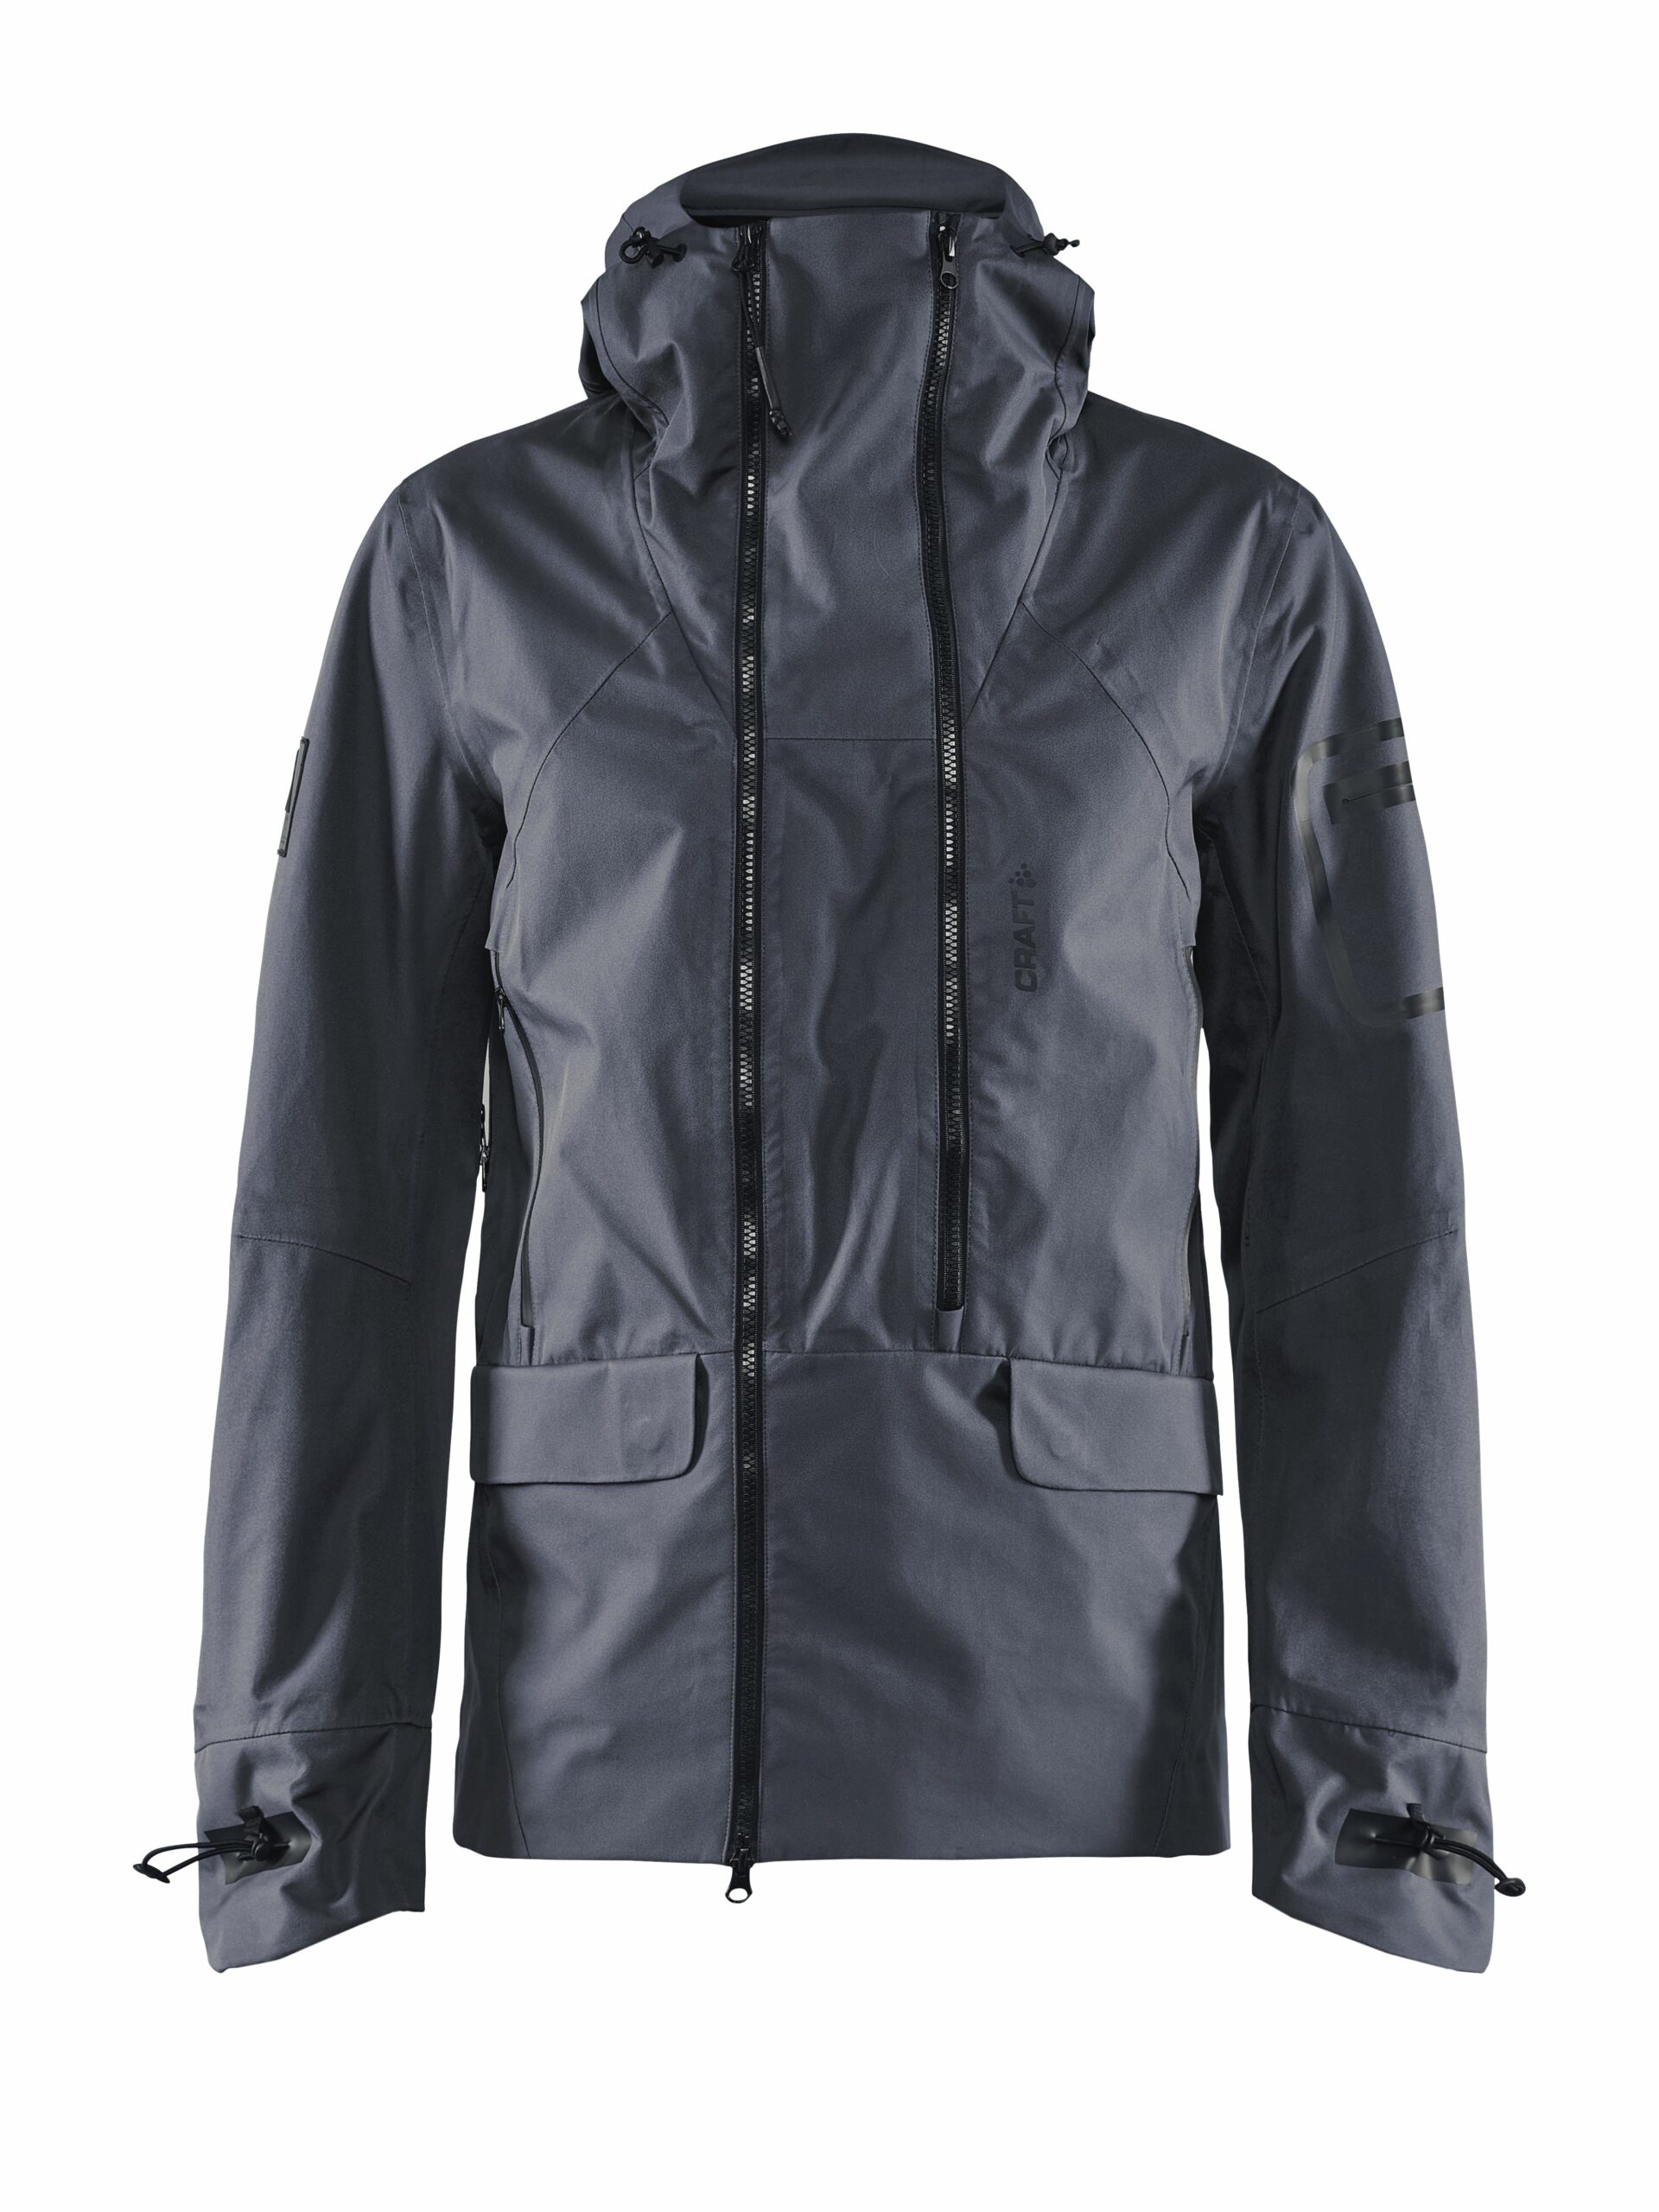 Craft - Polar shell jacket Maend - Asphalt 3XL